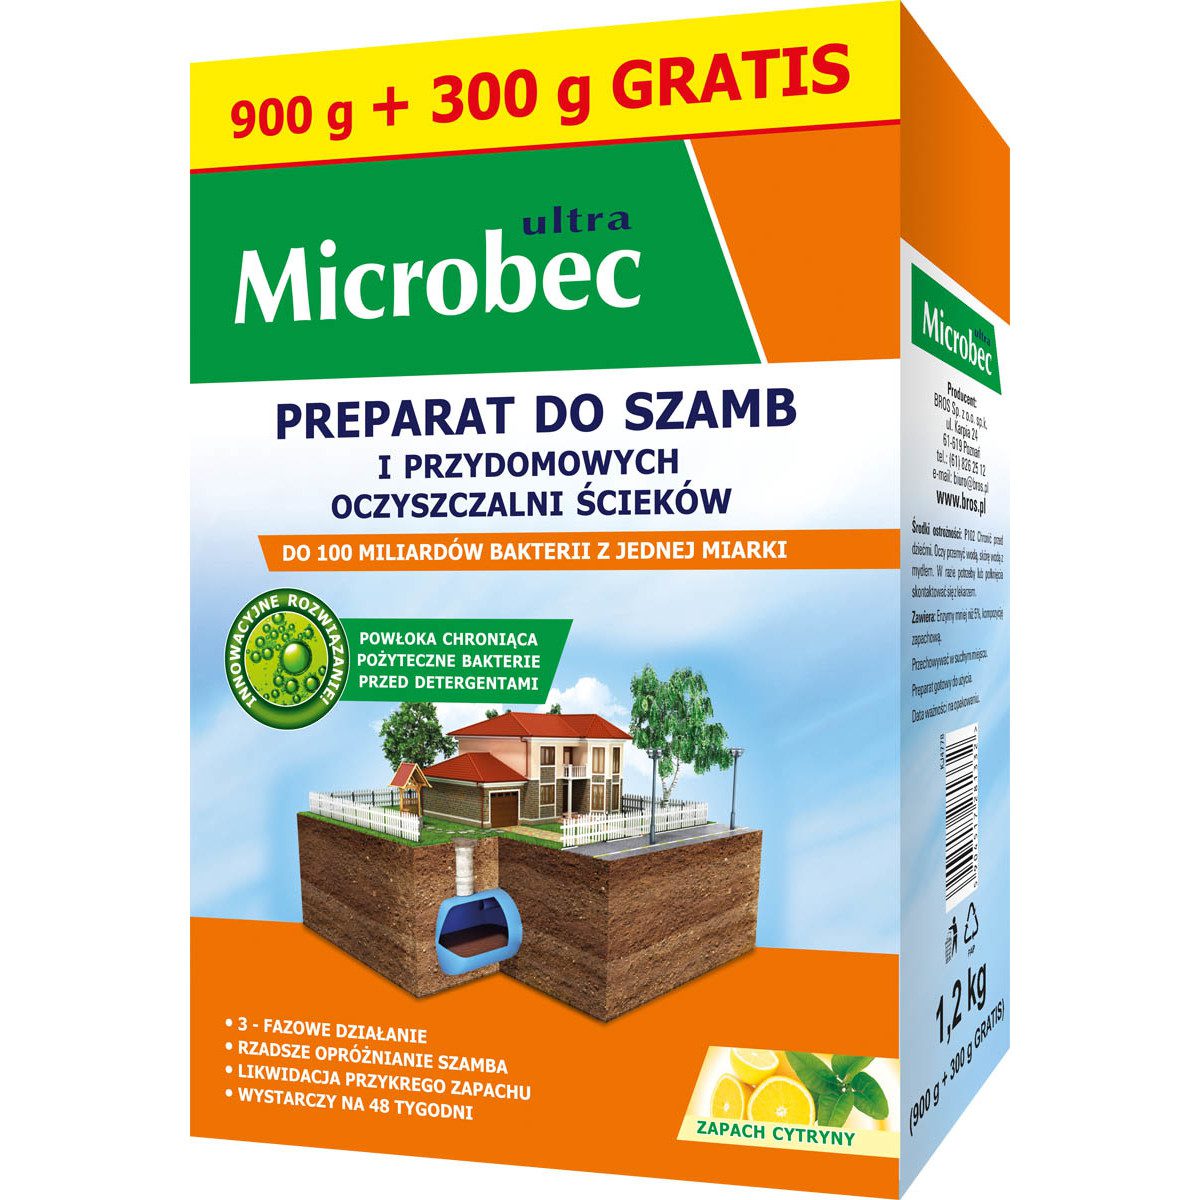 Microbec Ultra zapach cytryny – preparat do szamb 900+300g